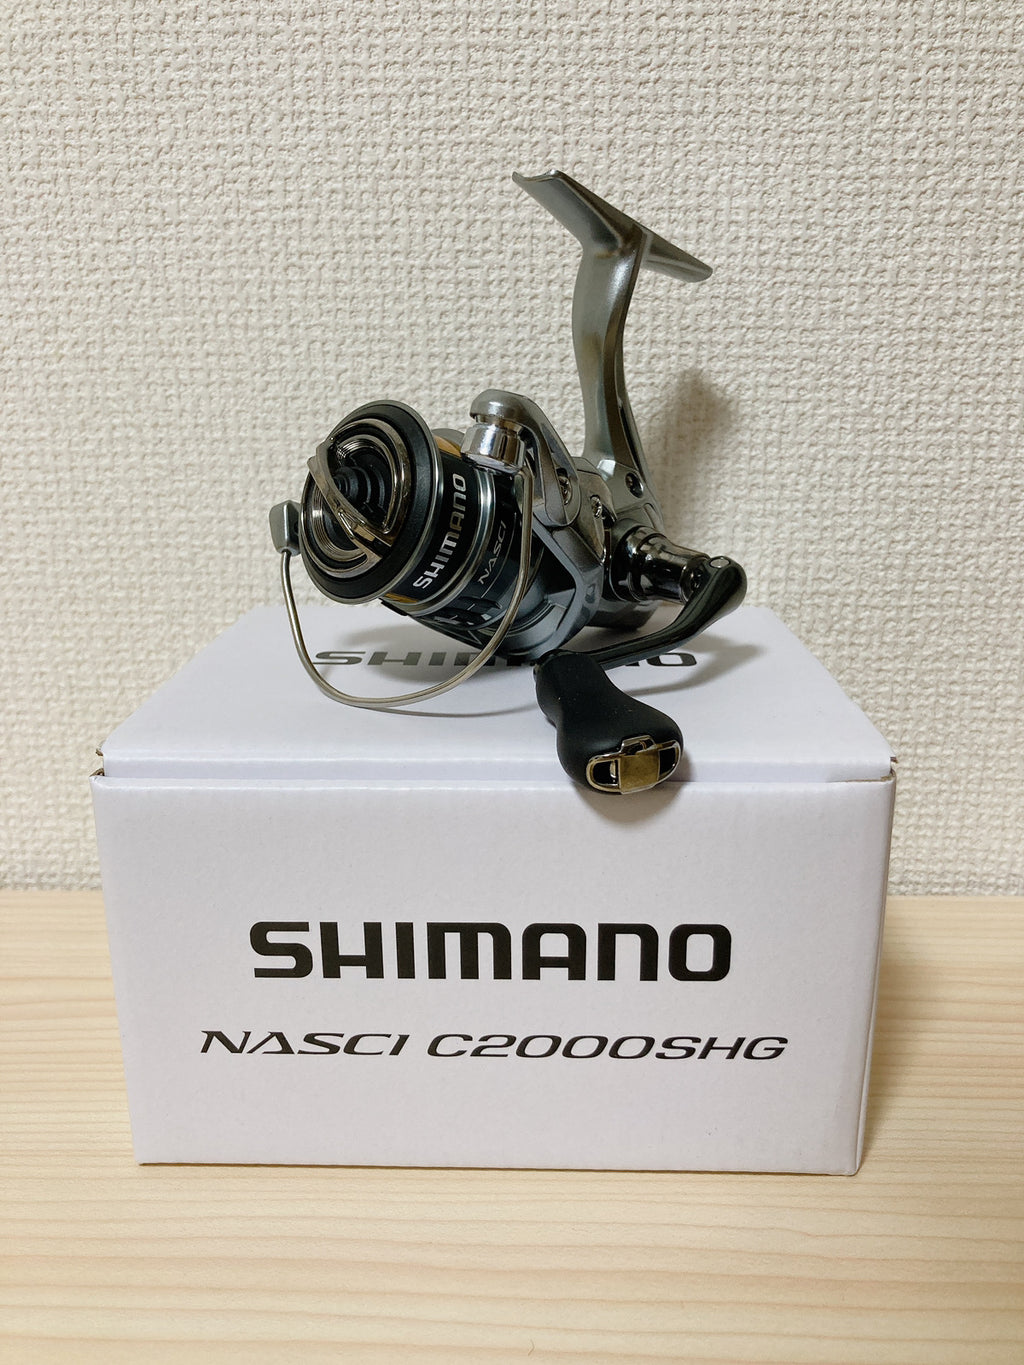 Shimano Spinning Reel 21 NASCI C2000SHG Gear Ratio 6.0:1 FIshing Reel